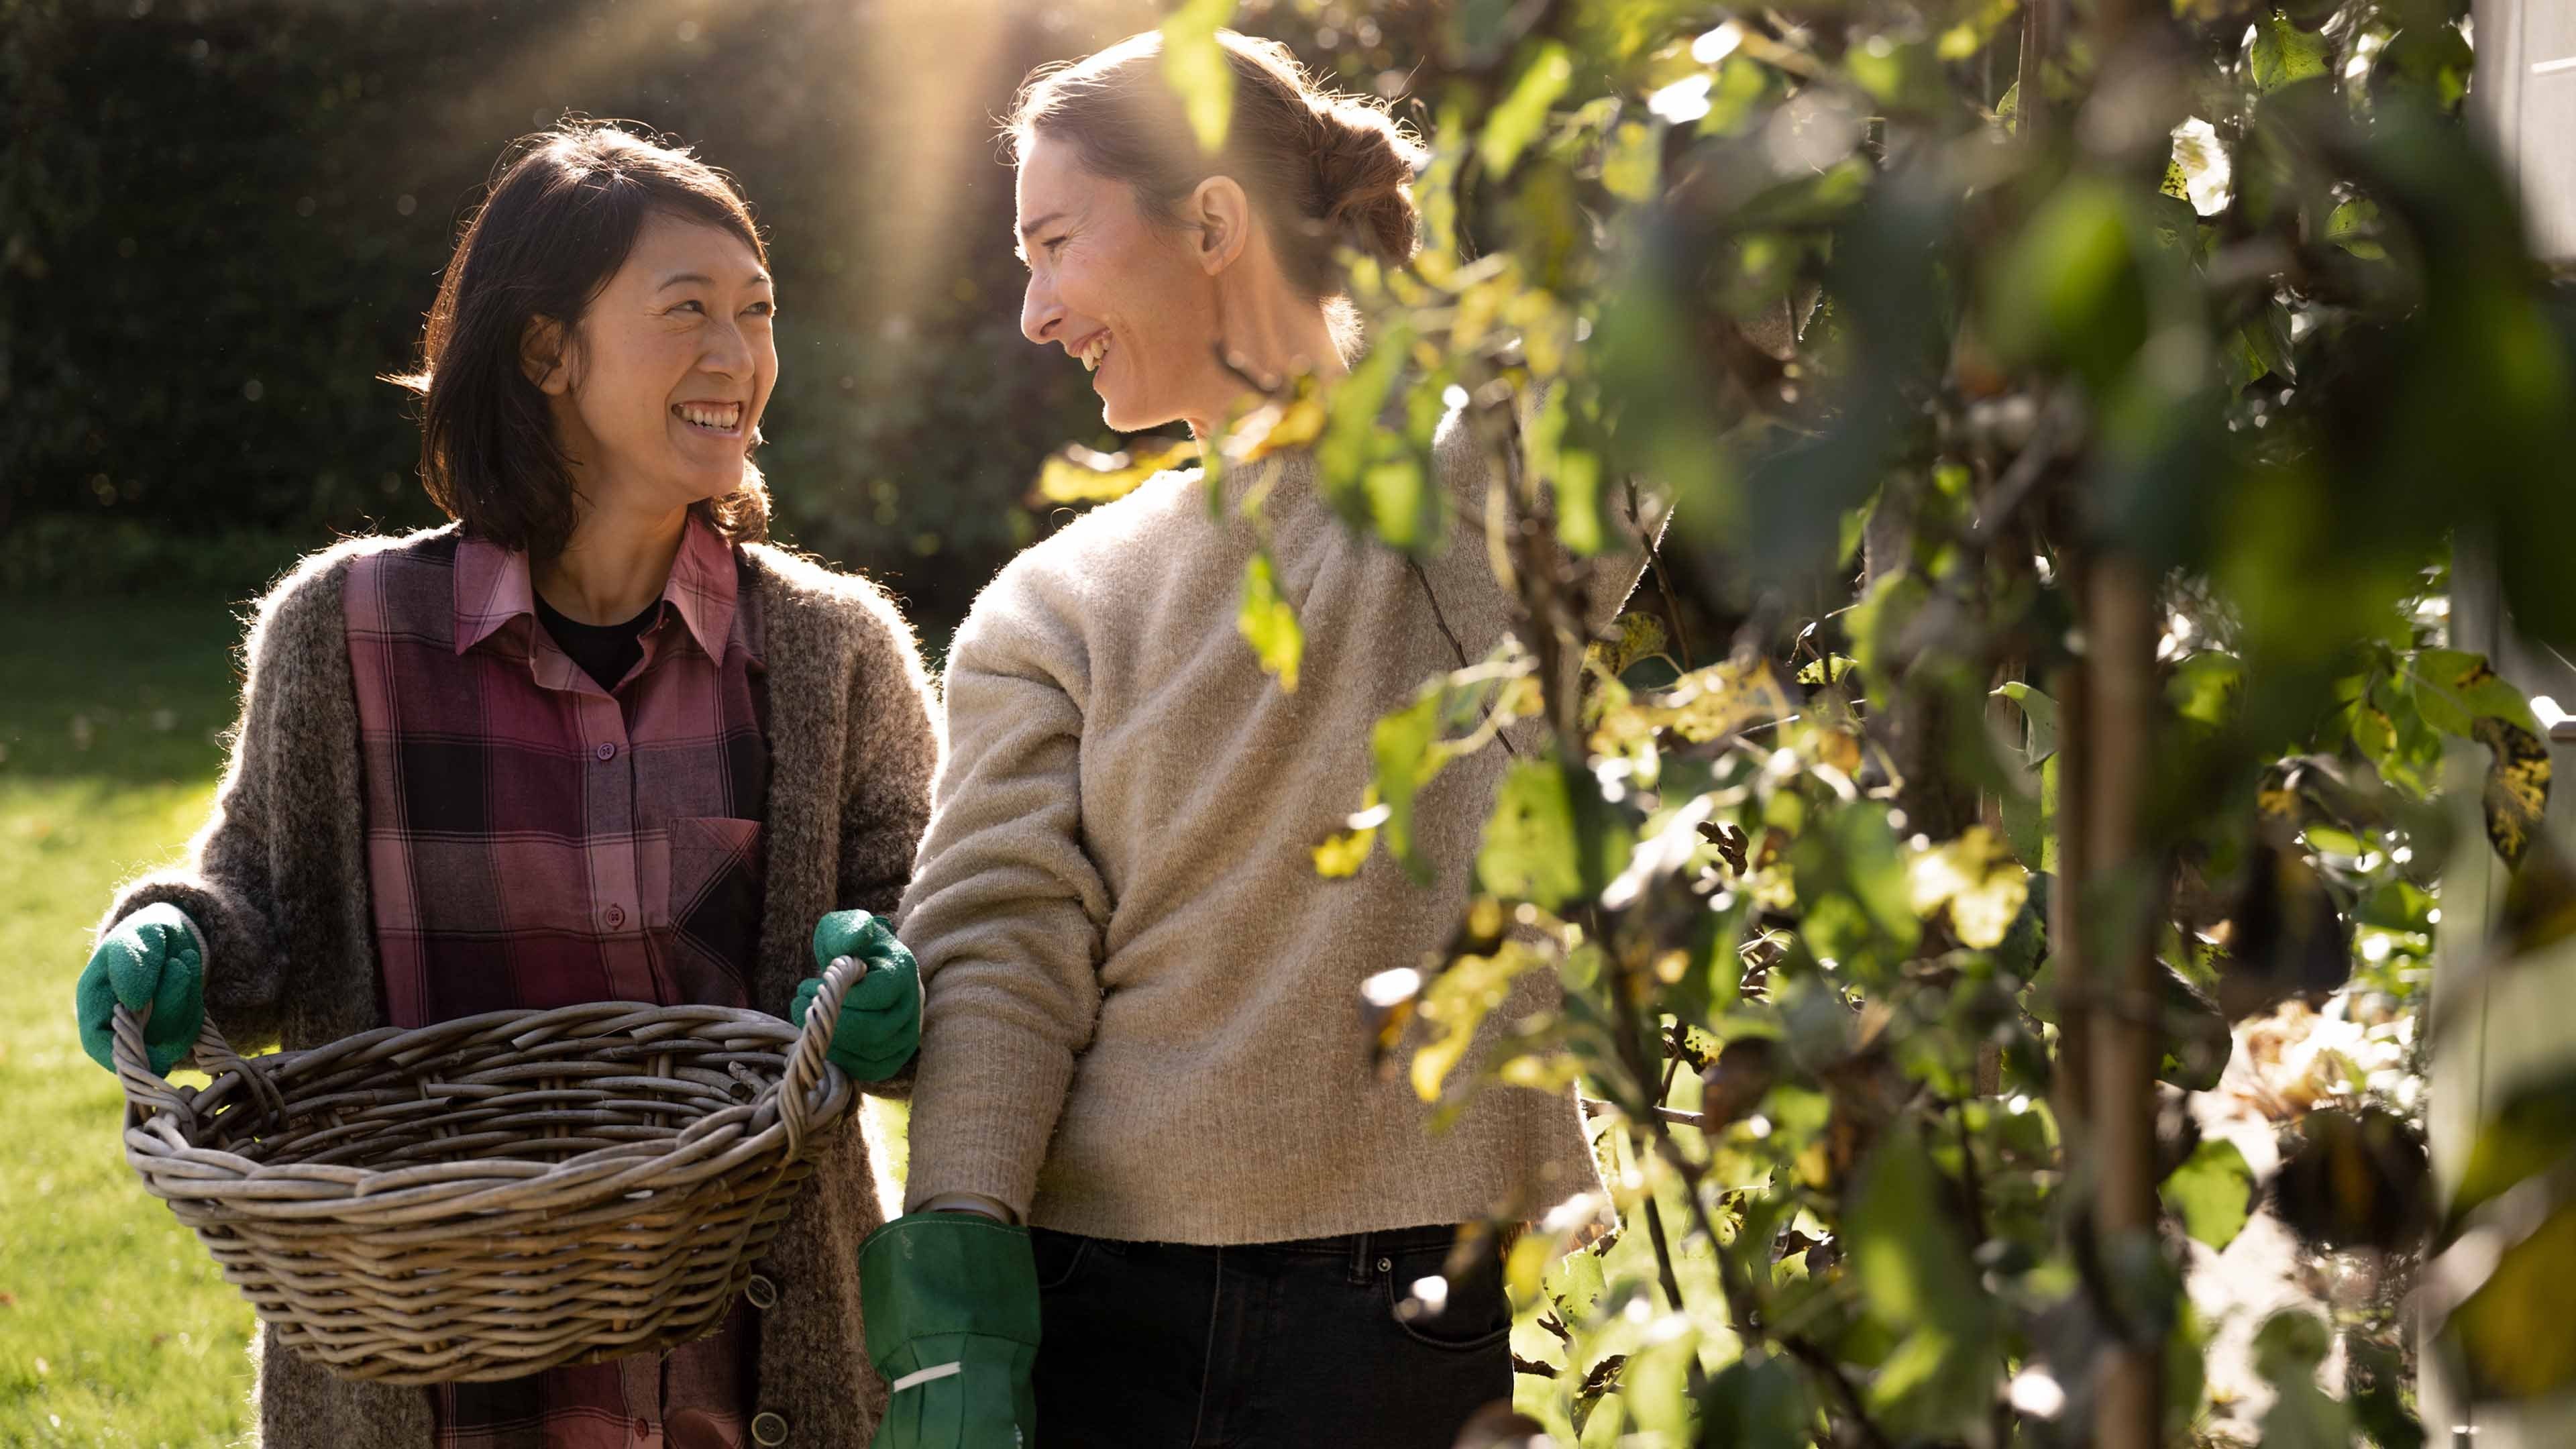 Deux femmes cueillent leur récolte dans un jardin.